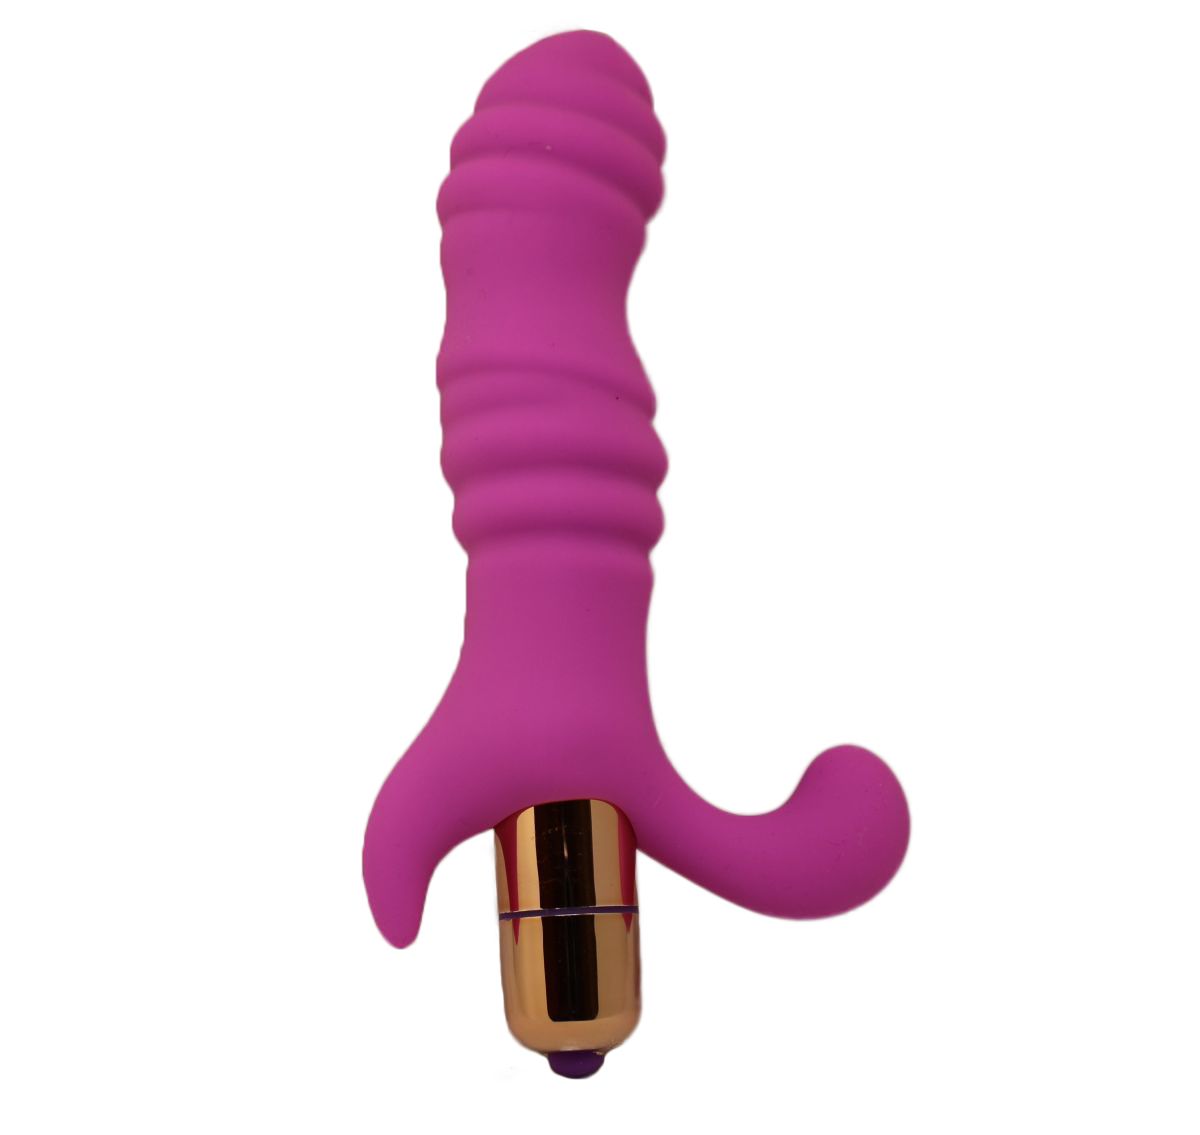 Вибростимулятор розового цвета с рельефной поверхностью и загнутым кончиком для наилучшей стимуляции. Подходит как для анального, так и вагинального проникновения. Имеет разнообразную функцию вибрации.  Рабочая длина - 10 см.